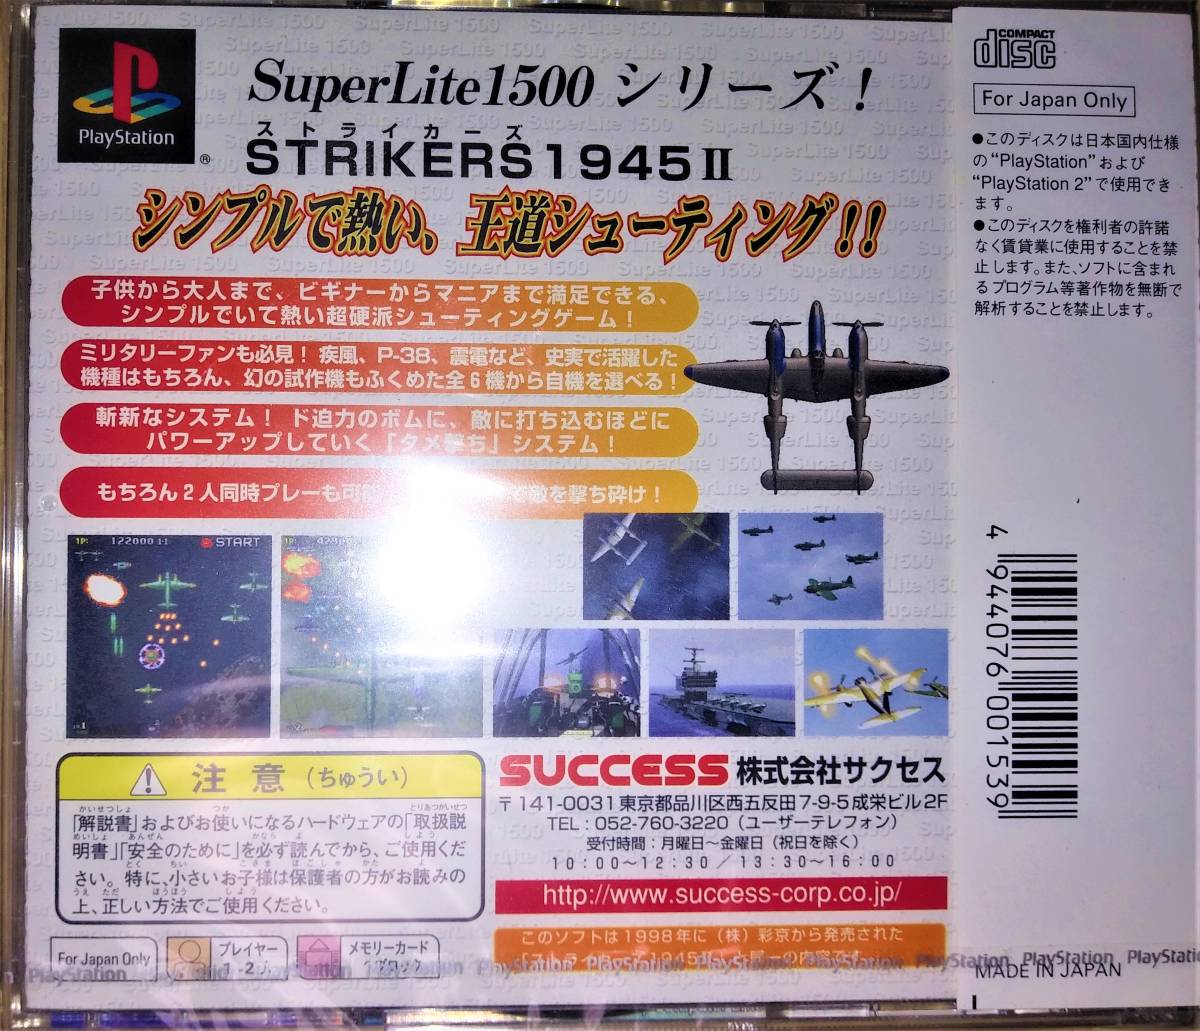 【新品未開封】PS プレイステーション SuperLite1500シリーズ ストライカーズ 1945II 彩京_画像2